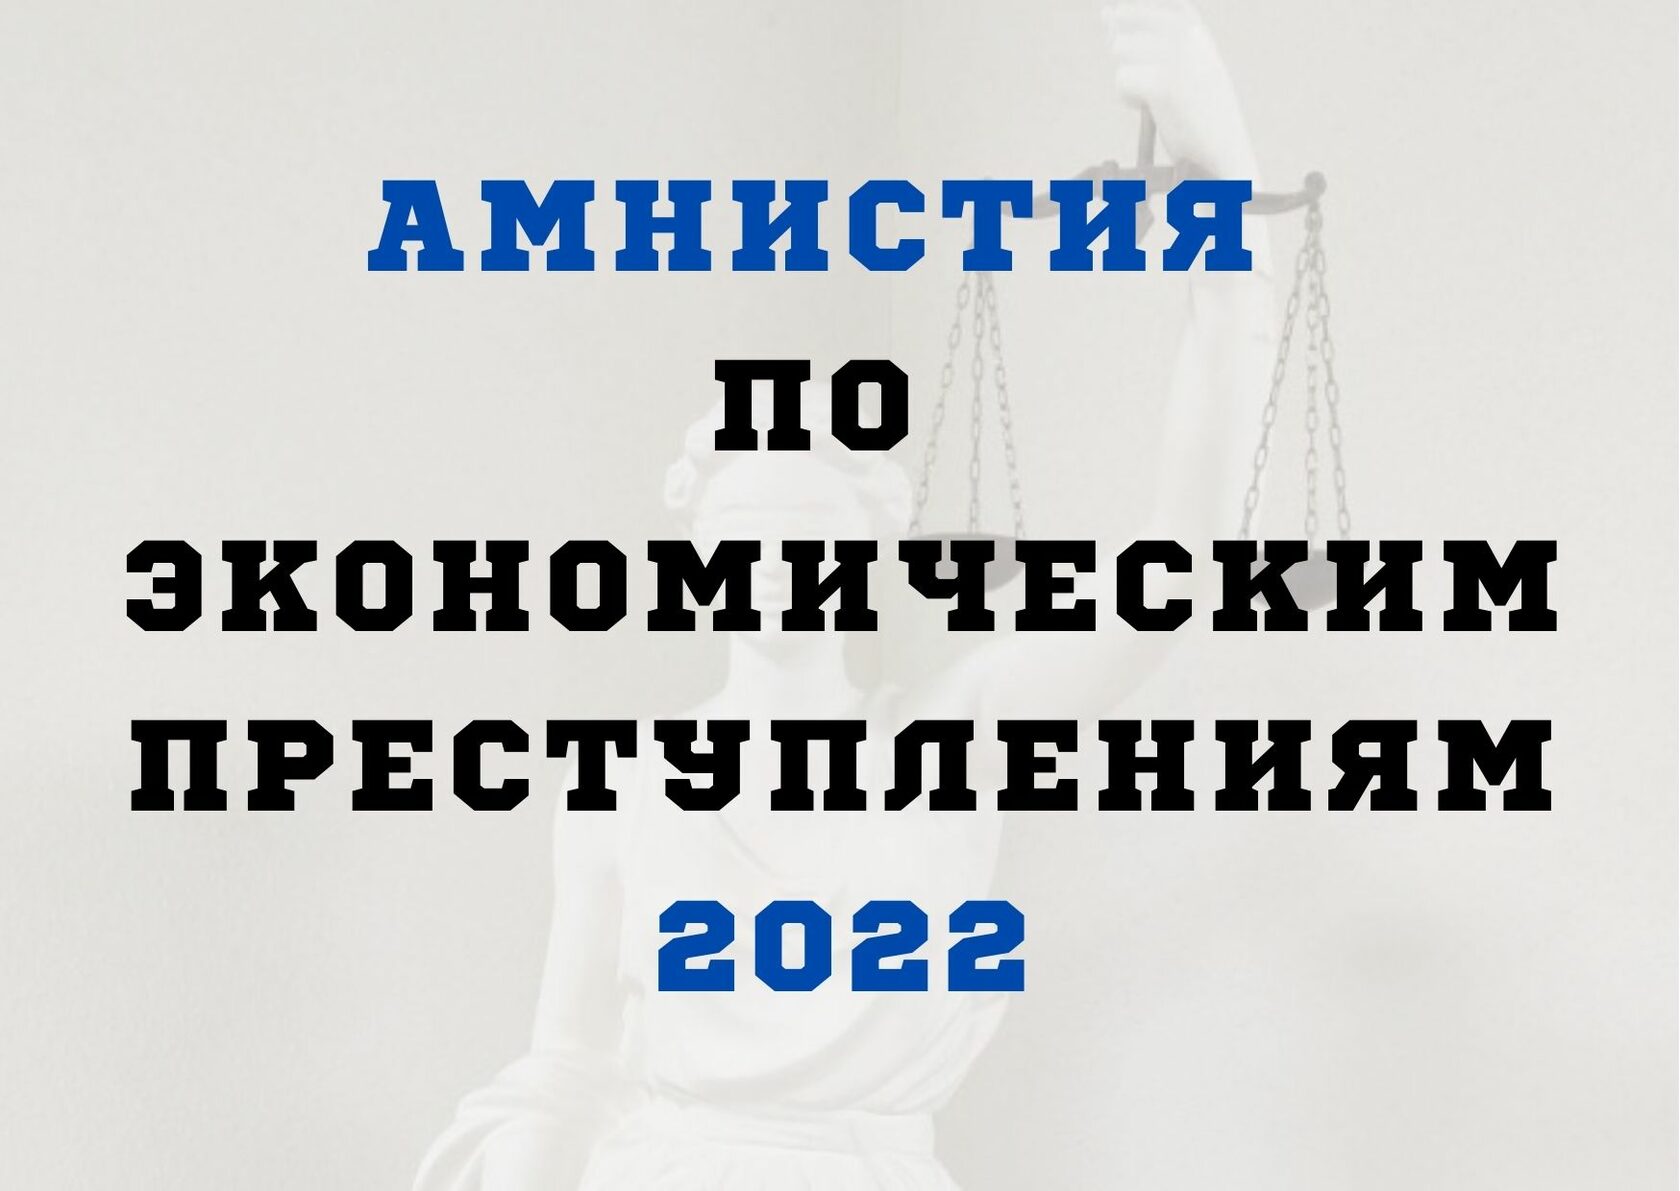 Даты амнистий. Амнистия по экономическим преступлениям. Амнистия 2022. Амнистия законопроект 2022. Экономическая амнистия 2022.